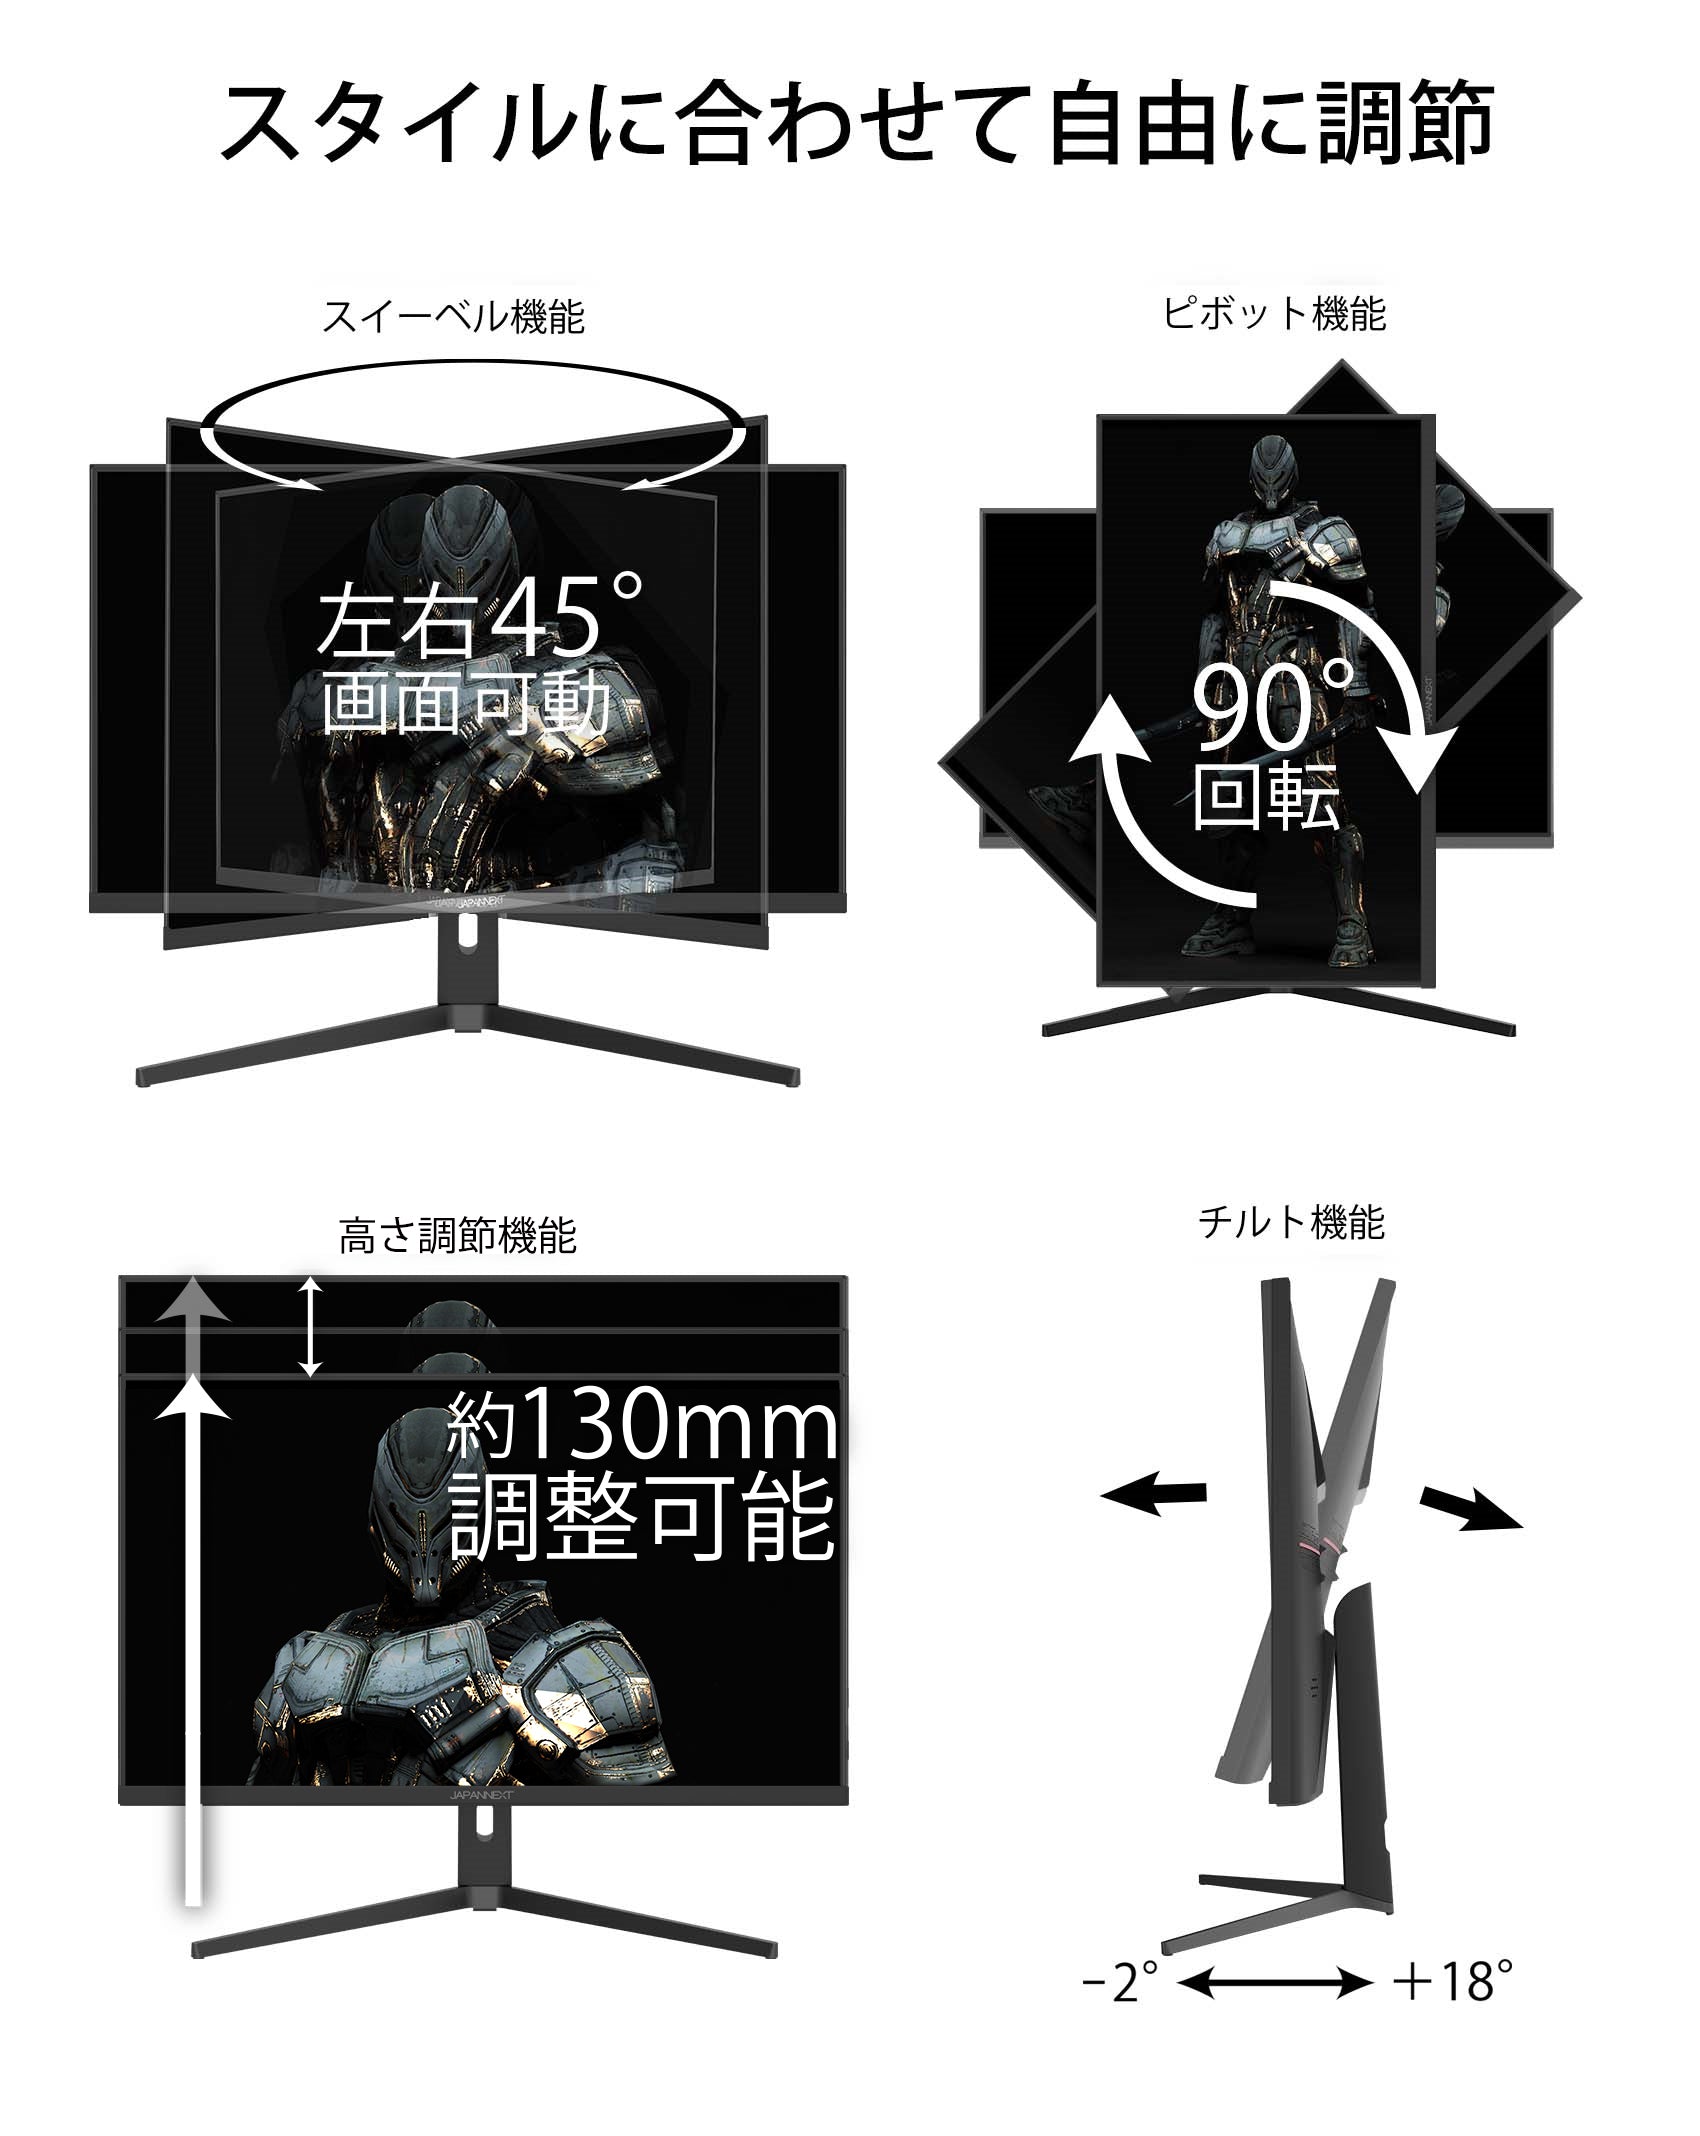 JAPANNEXT HDMI 2.1対応 31.5型 144Hz対応４Kゲーミングモニター JN-315IPS144UHDR-N 昇降スタンド  ピボット PIP PBP対応 通販